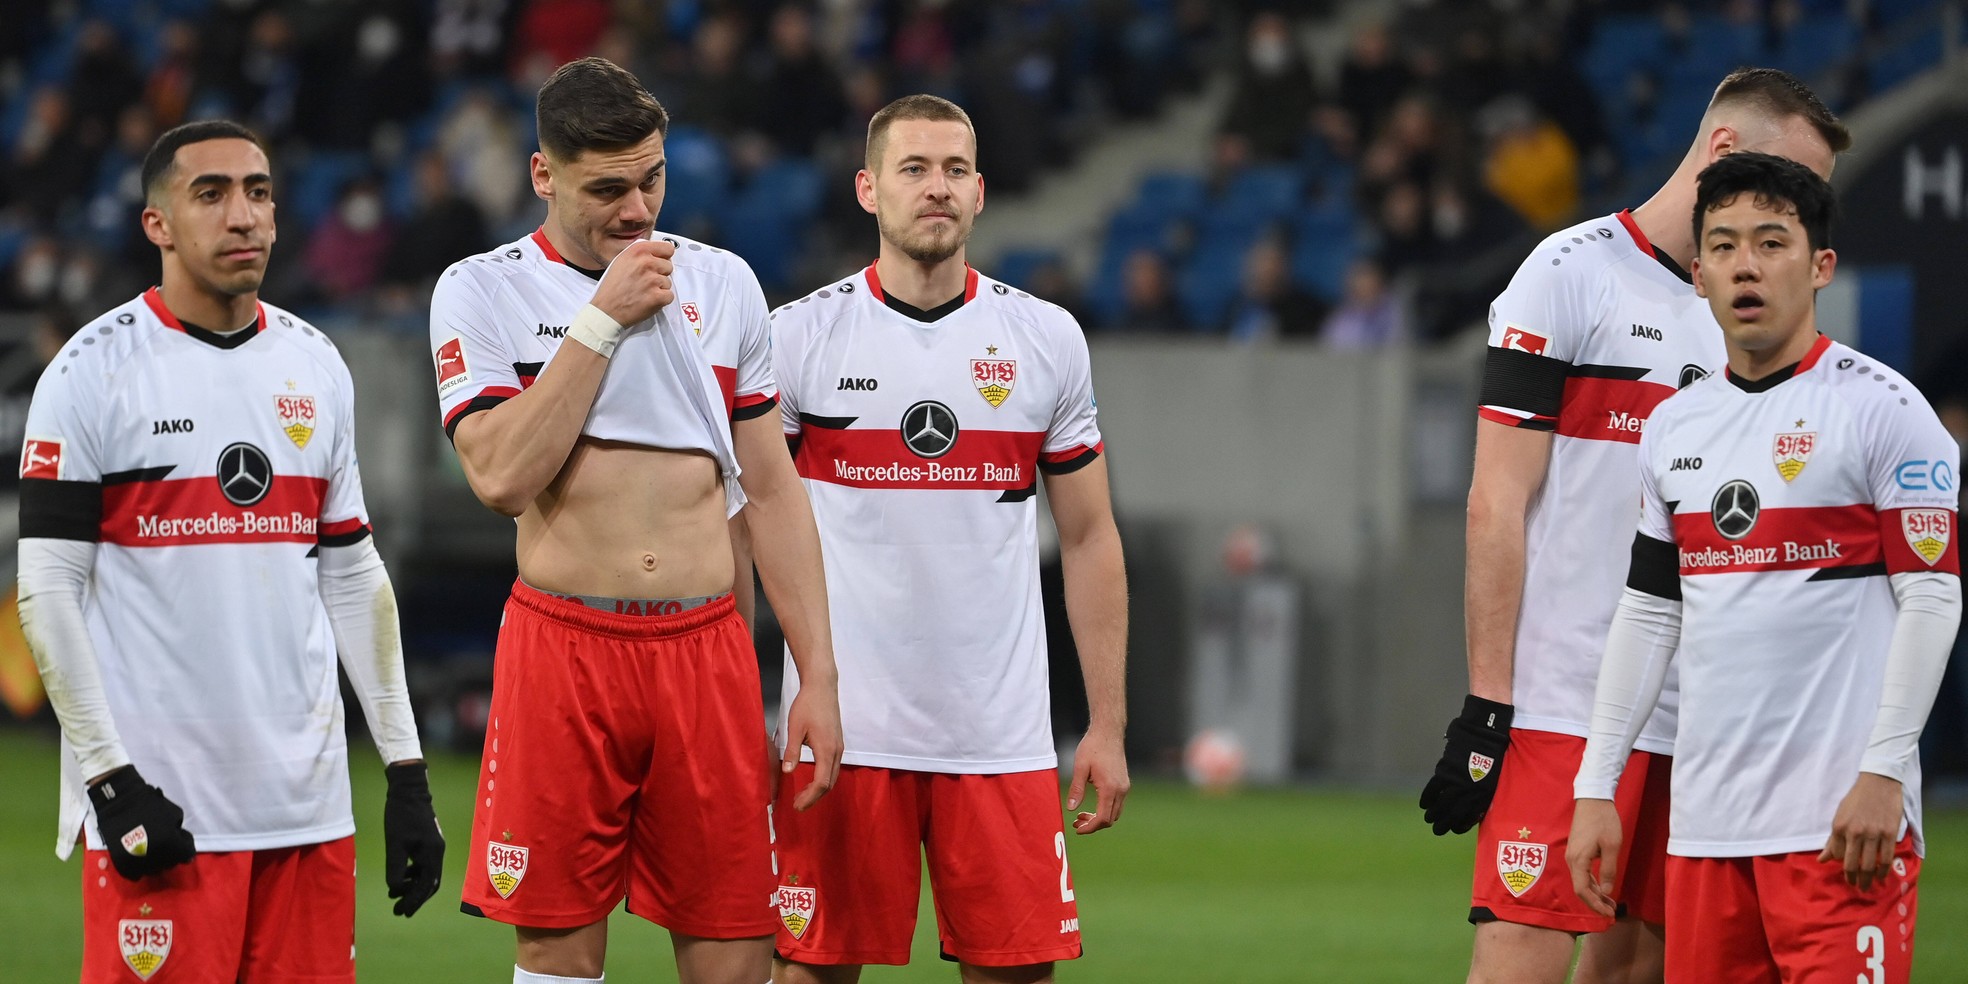 Der VfB Stuttgart bei Comunio einsortiert